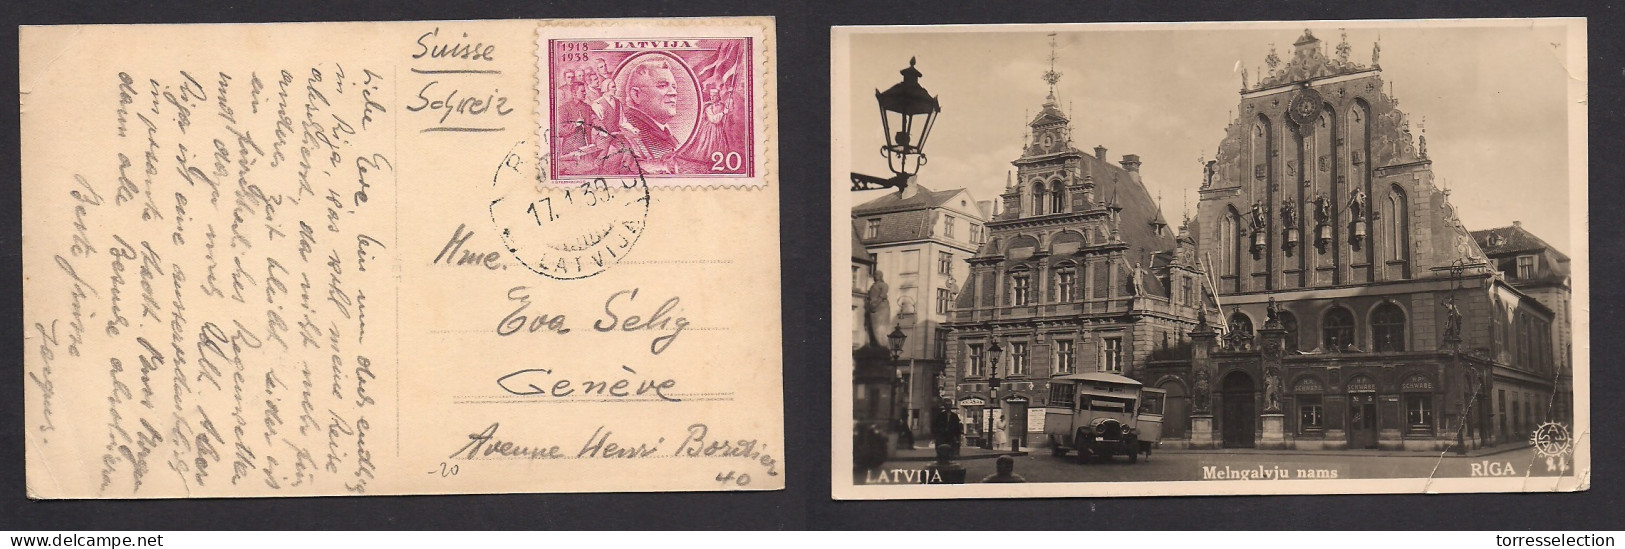 LATVIA. 1939 (17 Jan) Riga - Geneve, Switzerland. Single 20c Violet Fkd Ppc. Fine Used. - Latvia